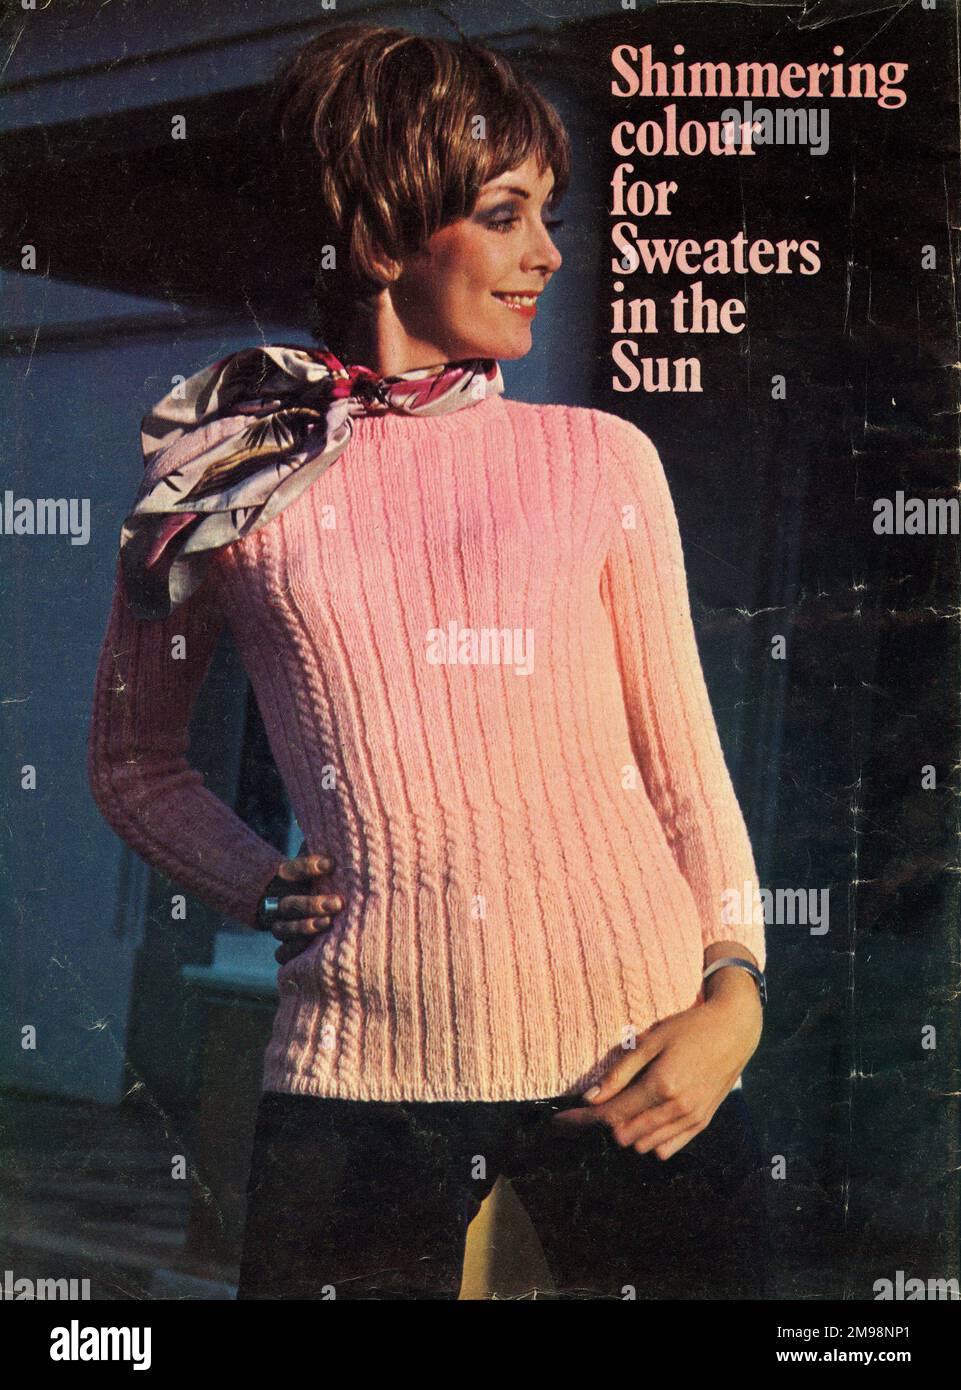 Knitting pattern, Woman's Fashion Sweater. Stock Photo